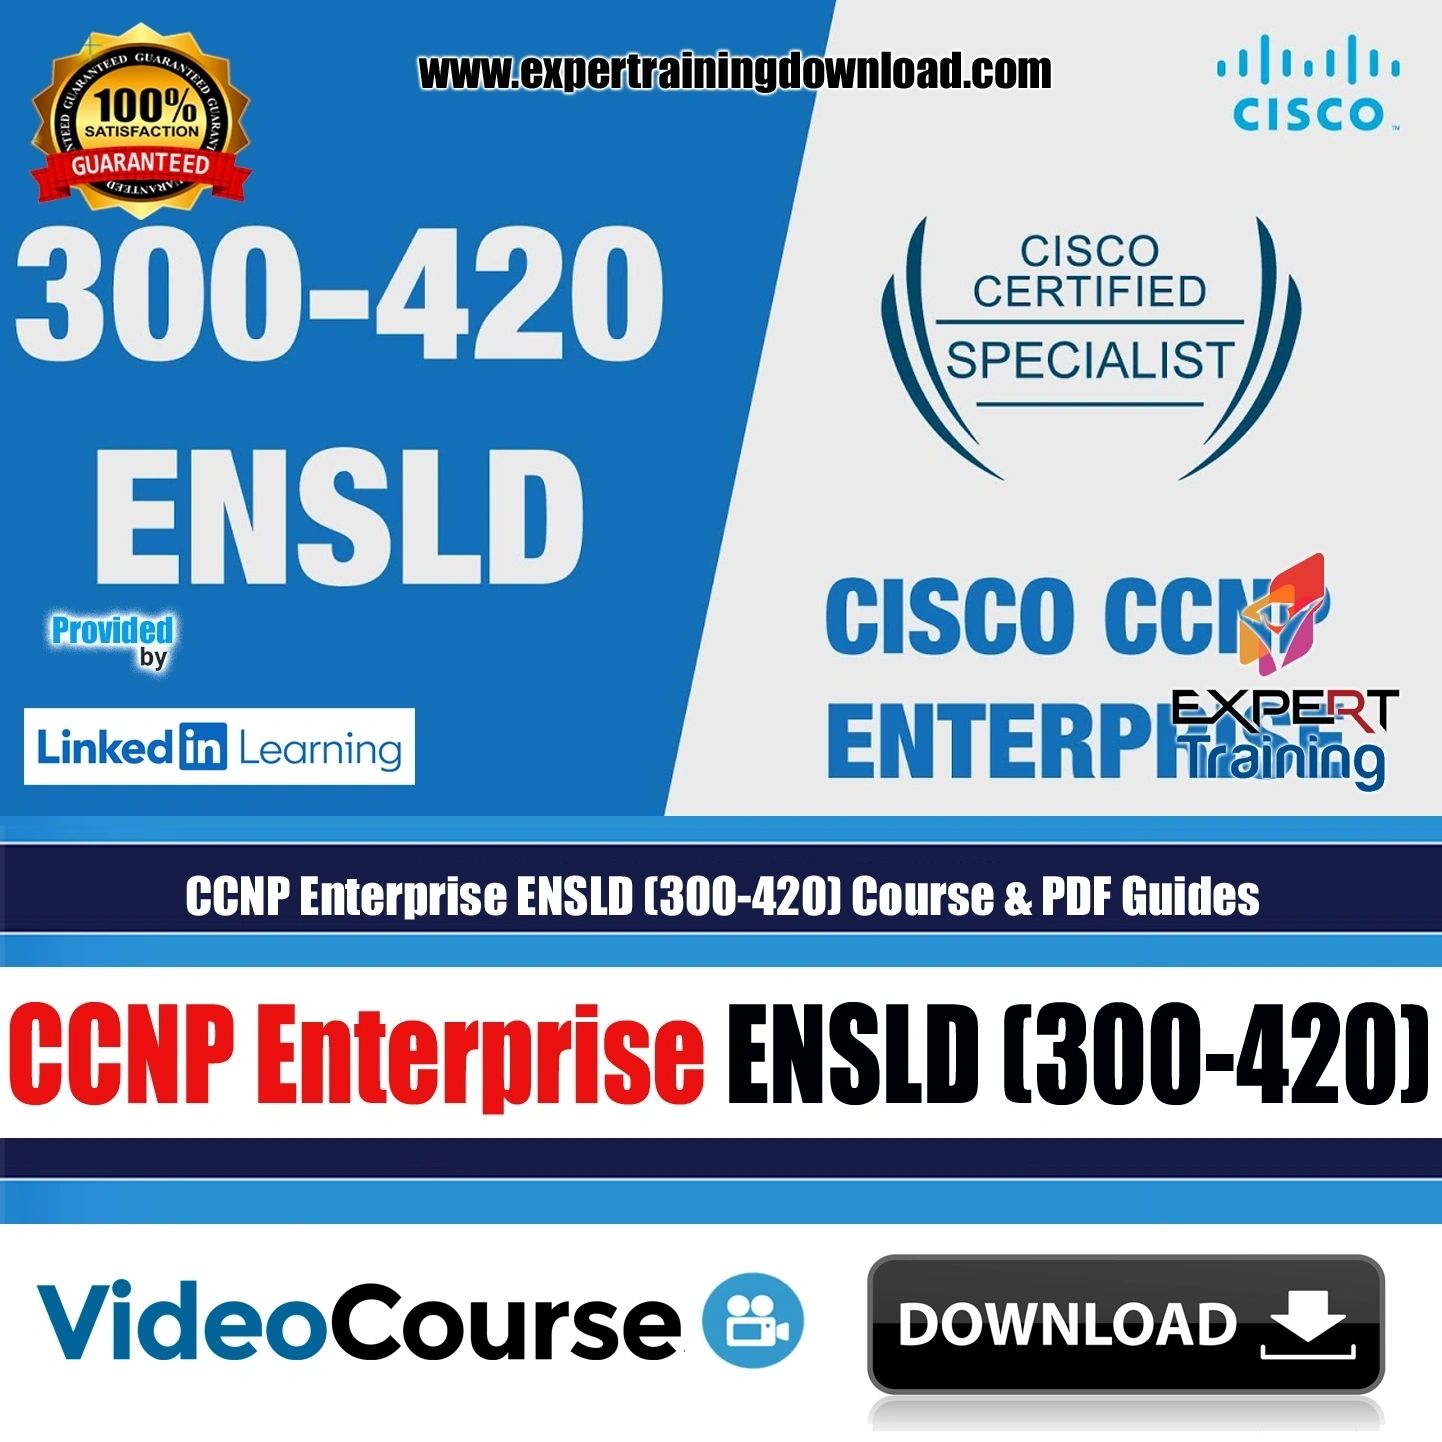 CCNP Enterprise ENSLD (300-420) Course & Practice Exam PDF Guides